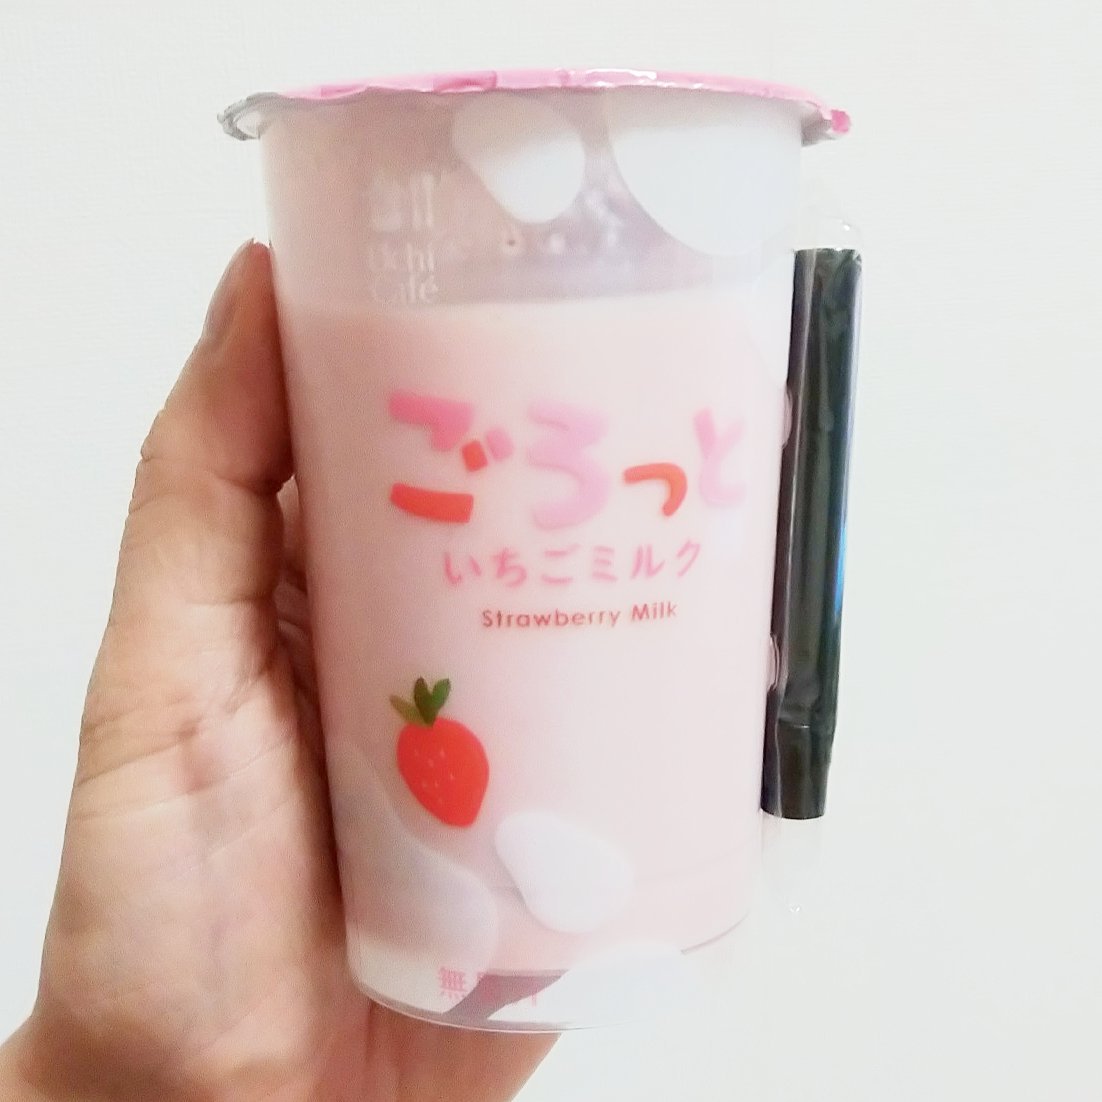 #いちごミルクラブ #東京めいらく千葉工場 #ごろっといちごミルク 謎イチゴ系－－－☆－本物イチゴ系甘さ強め系－－☆－－控え目系こってり系－－☆－－さっぱり系超ミルク系－－☆－－生クリーム系おもいで度－－☆－－ #侍猫度こってり激甘な苺ミルク！名前の通りゴロゴロ苺も美味しいのですがね、こってりなのがとても良い！前回のいちごミルクのが練乳的な甘さがあった気がしない？でもまぁ、コンビニいちごミルクではトップレベルの激甘っぷりを味わえますぞ。ローソンで買ったやつだよ。#いちごオレ #いちごオレ味 #いちごミルク #いちごミルクみたい #いちご牛乳 #いちご牛乳味 #イチゴ牛乳 #いちご牛乳クラブ #苺牛乳 #苺牛乳が好き #苺ミルク #苺スイーツ #苺 #苺好きに生まれたからには #メソギア派 #糖分 #いちごミルク味 #スイーツ #スイーツ好き #スイーツスタグラム #スイーツタイム #スイーツ写真 #strawberry #strawberrymilk